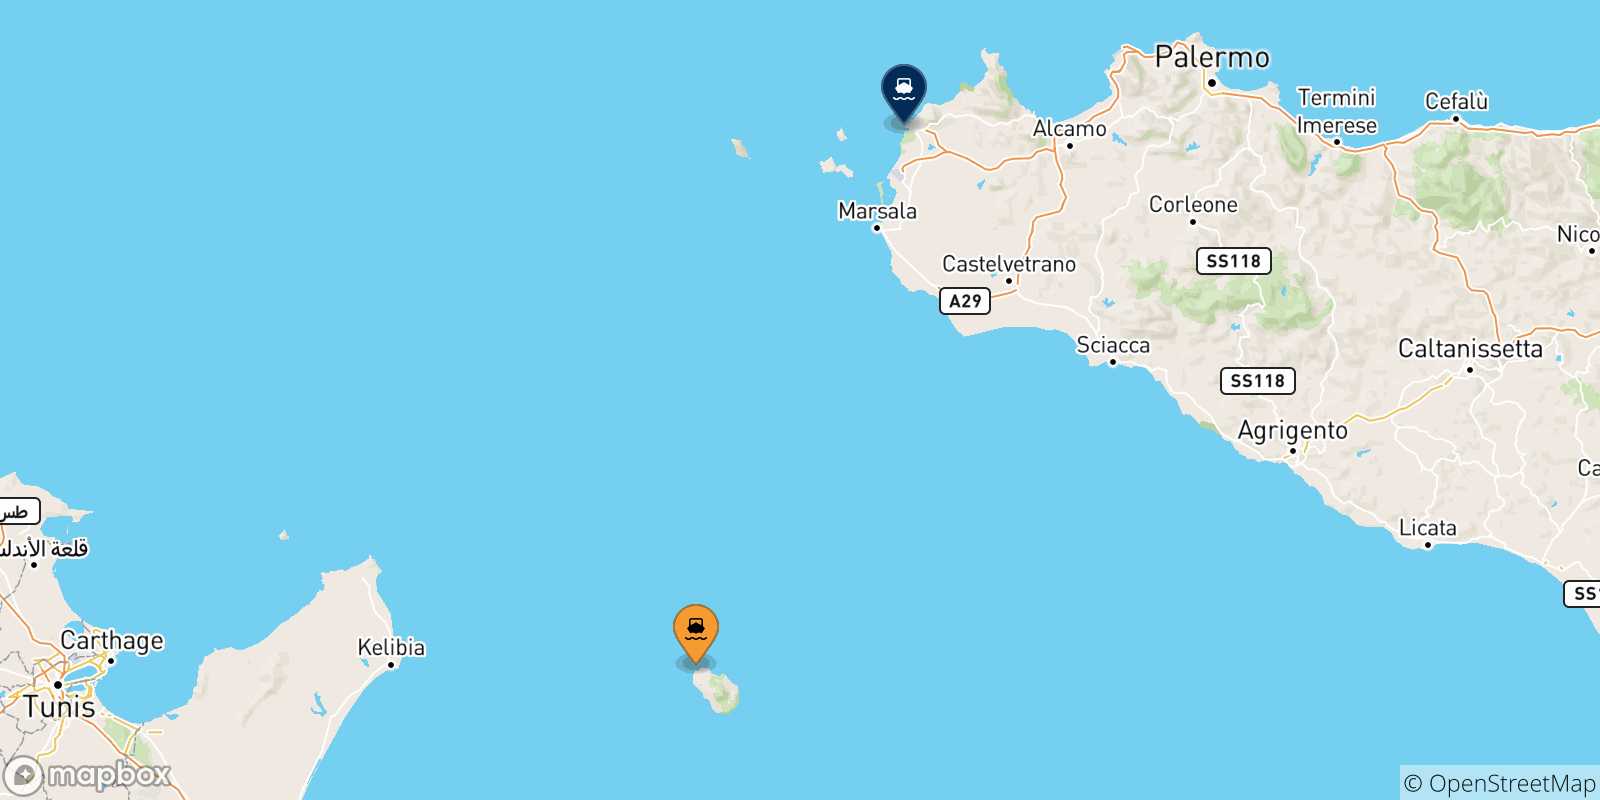 Mappa delle possibili rotte tra l'Isola Di Pantelleria e l'Italia